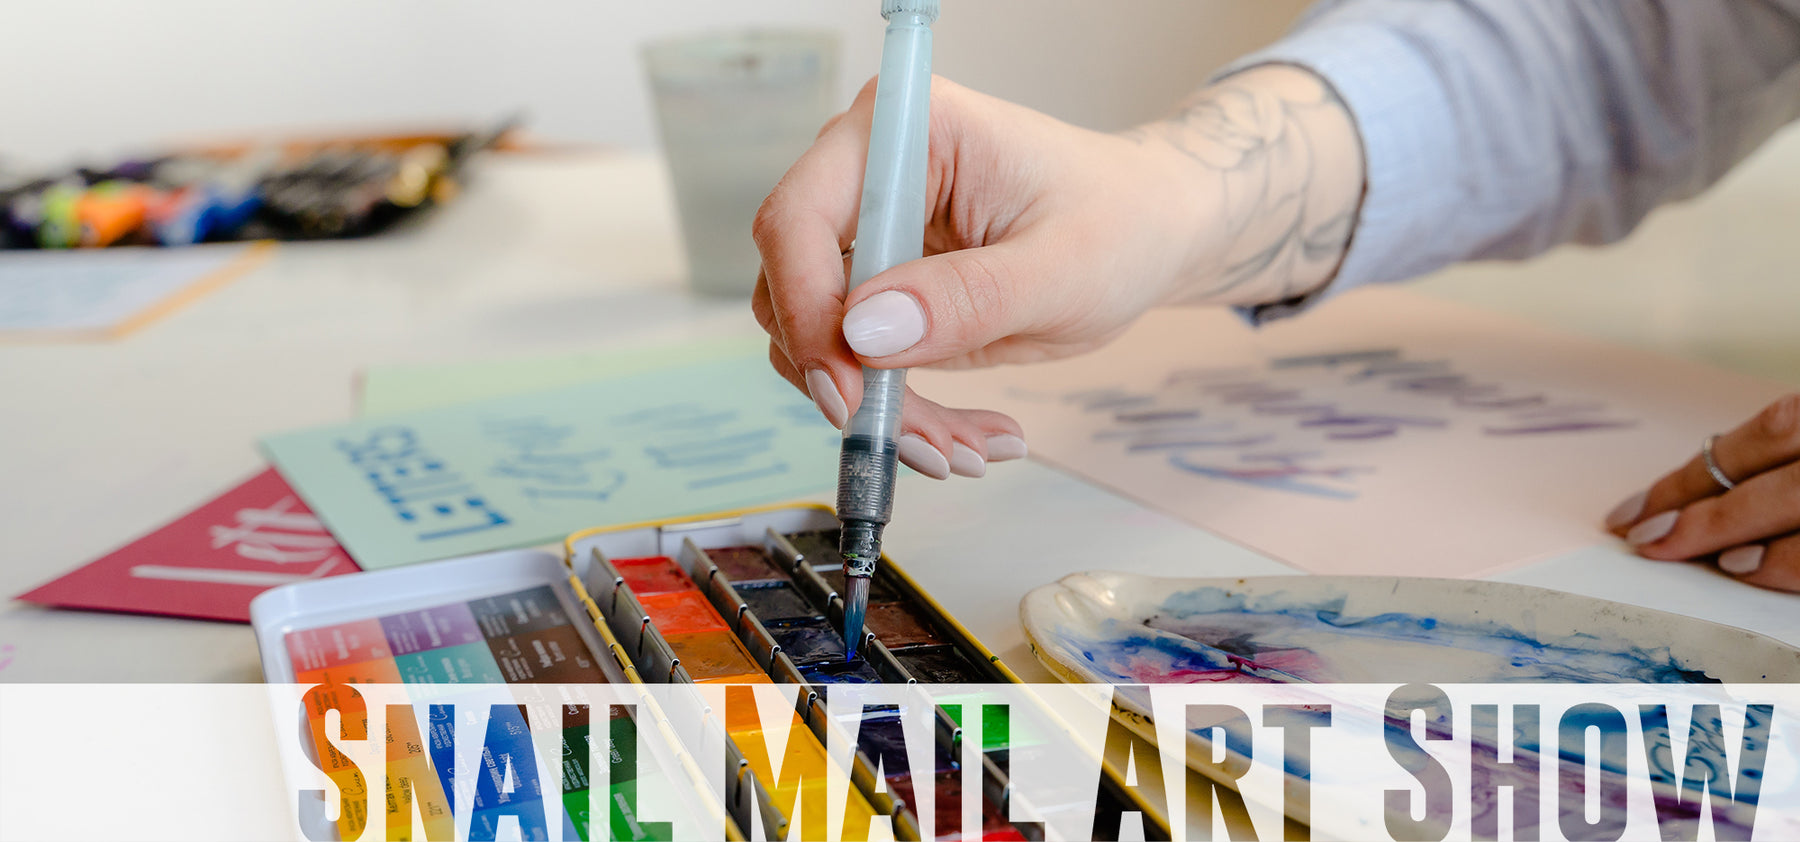 Snail Mail Art Show